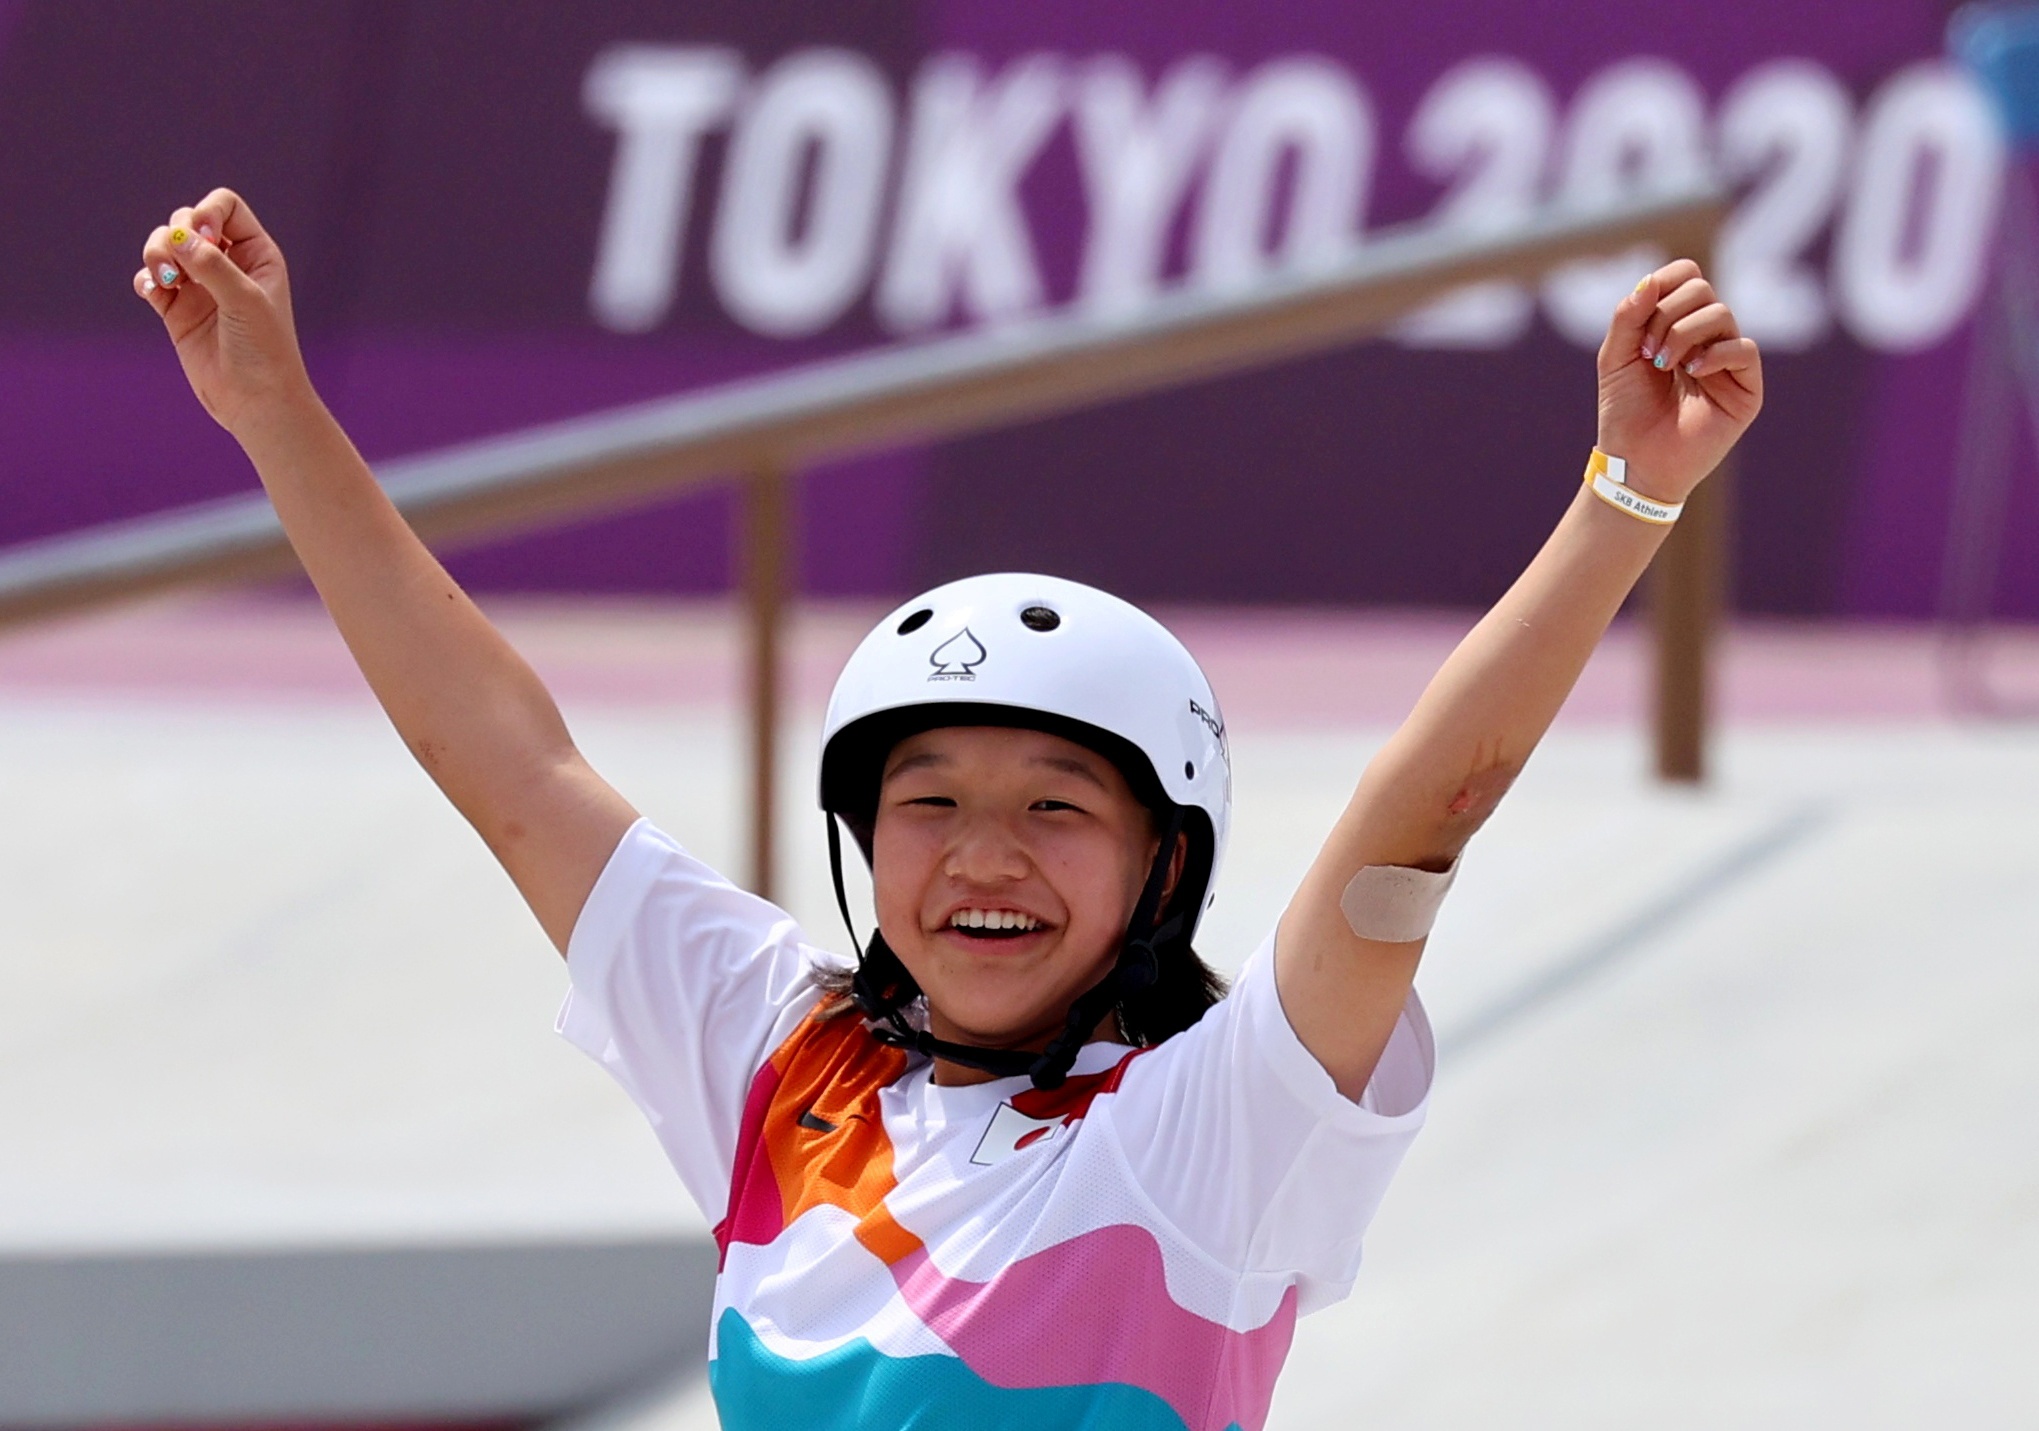 Skate e surfe: Jogos Olímpicos em busca do público mais jovem